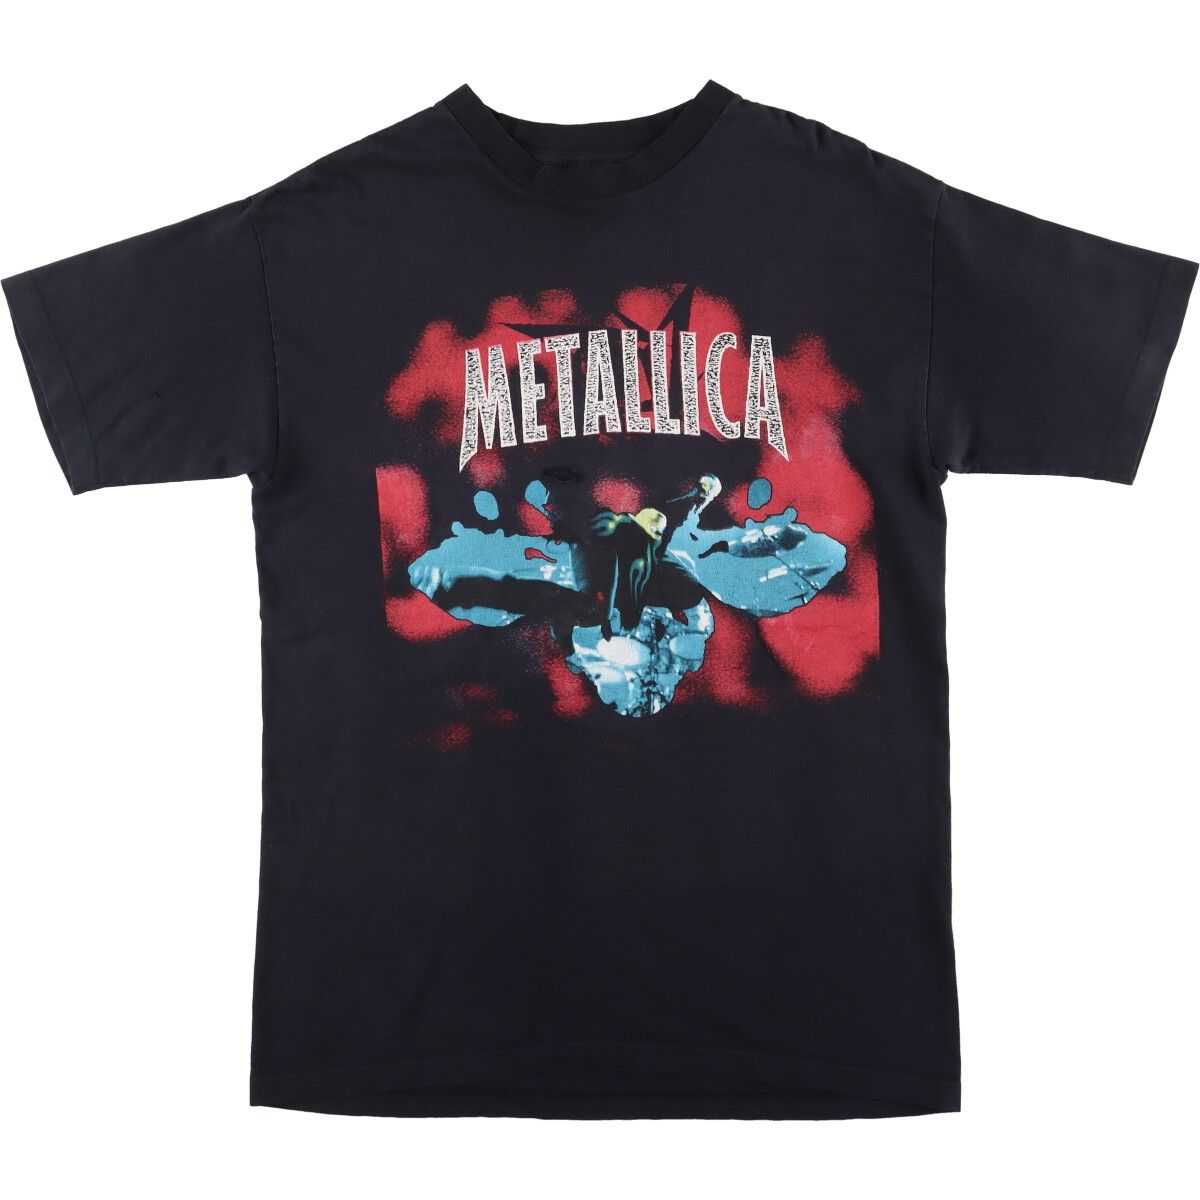 ヴィンテージヴィンテージ 90s Metallica/メタリカ RELOAD LOGO